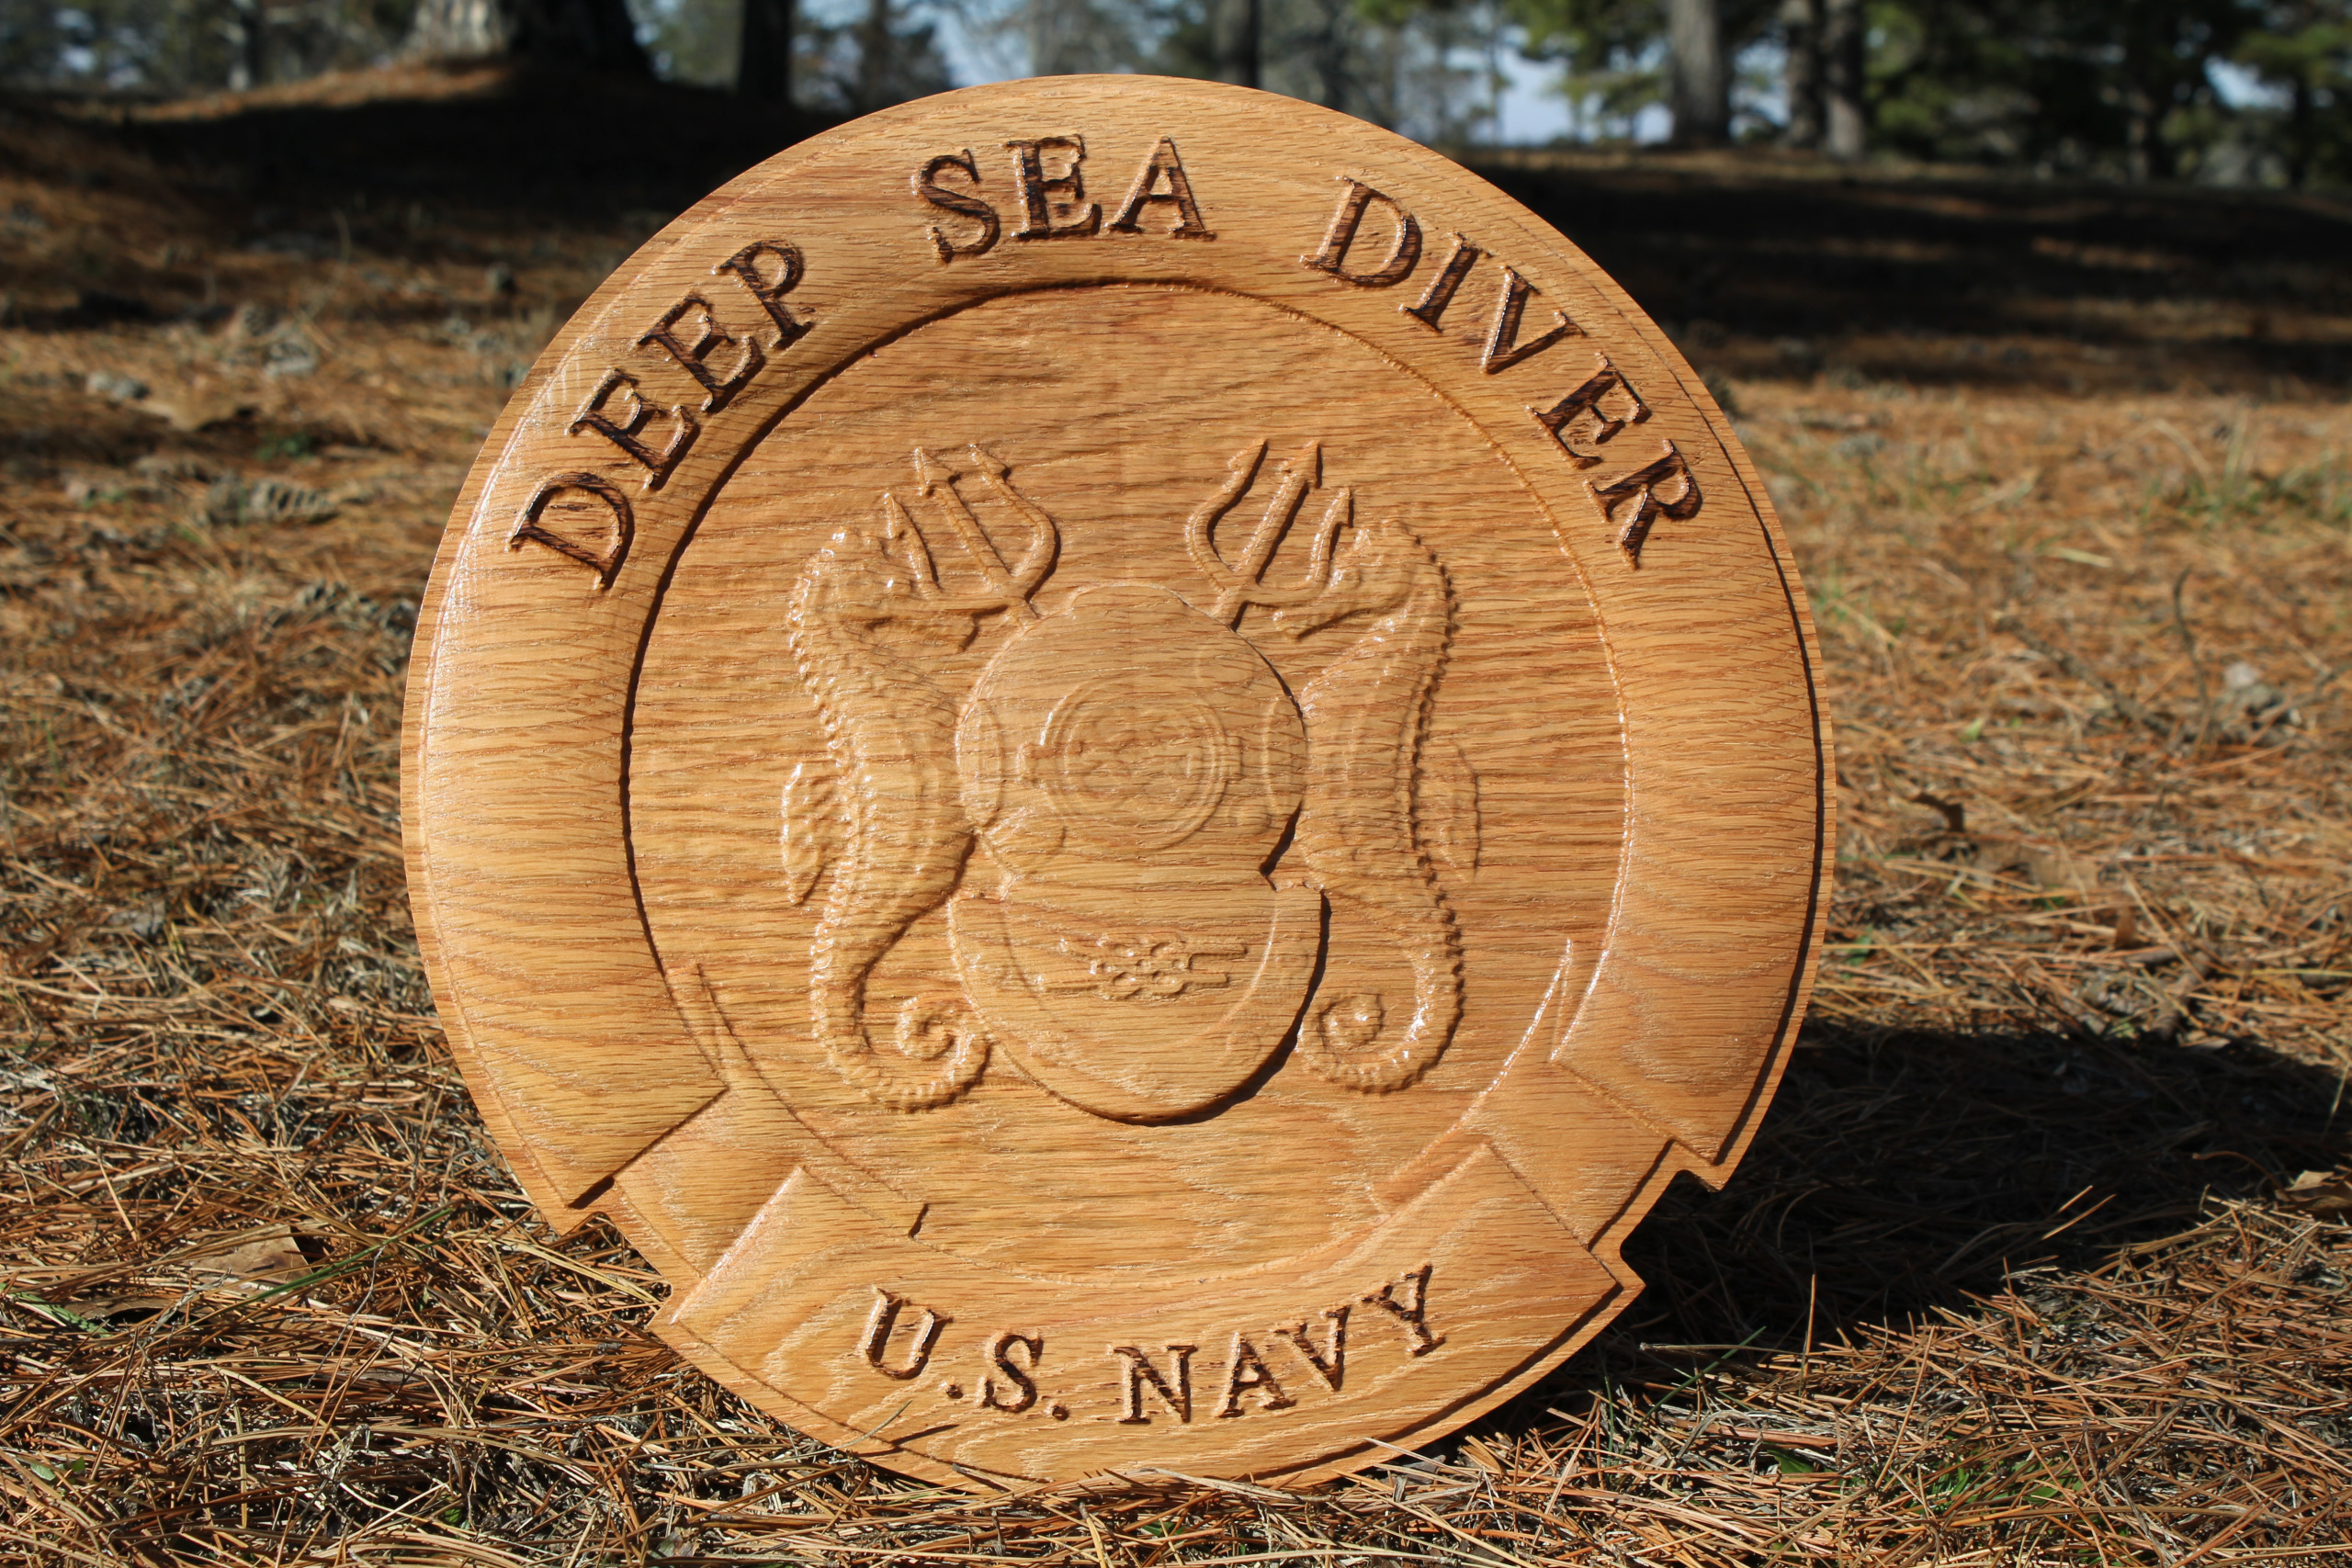 Deep Sea Navy Master Diver Plaque